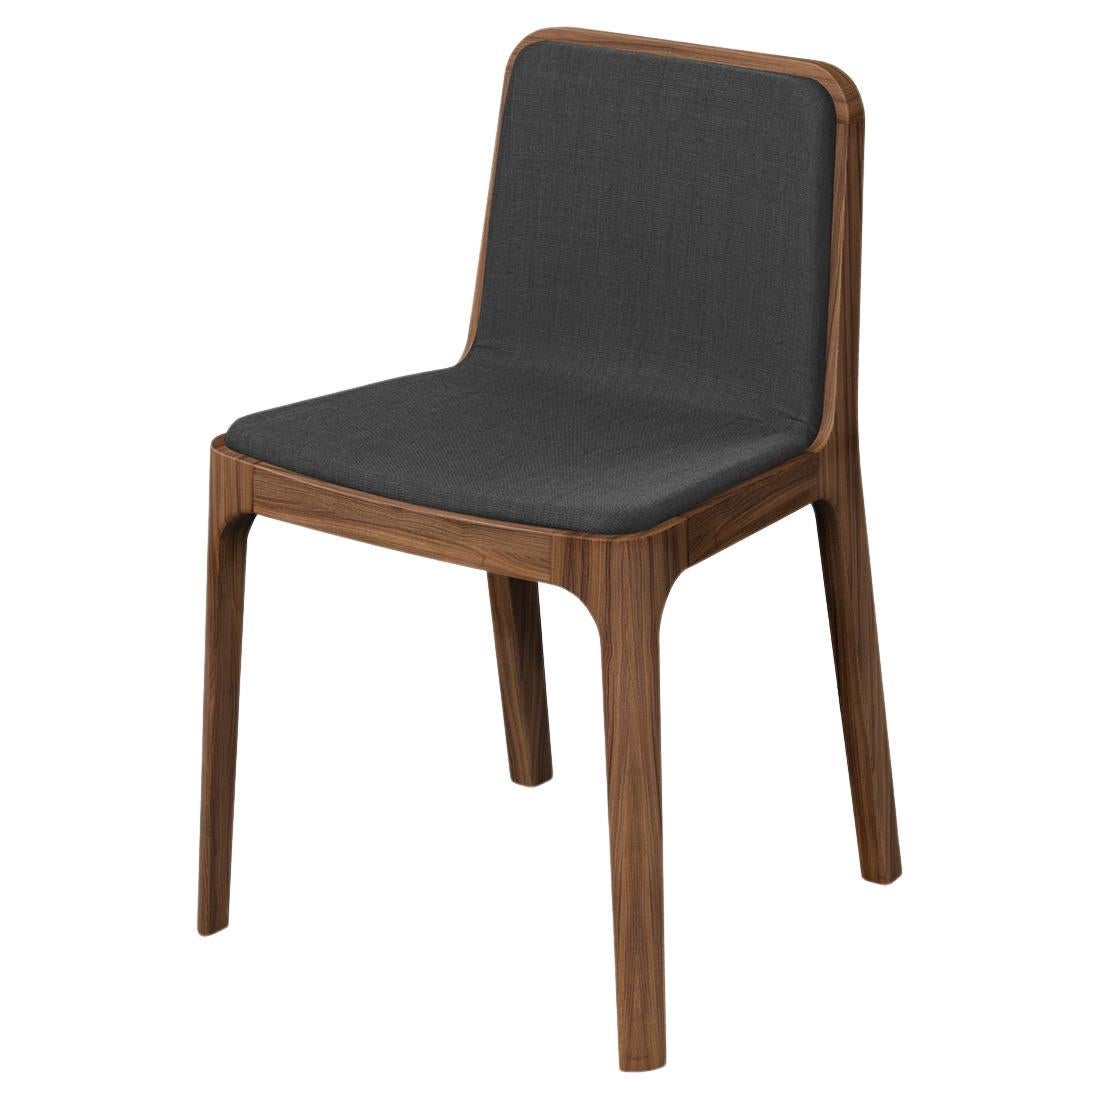 Chaise Modernity minimaliste, bois de frêne / teinté noyer, revêtement en tissu finlandais